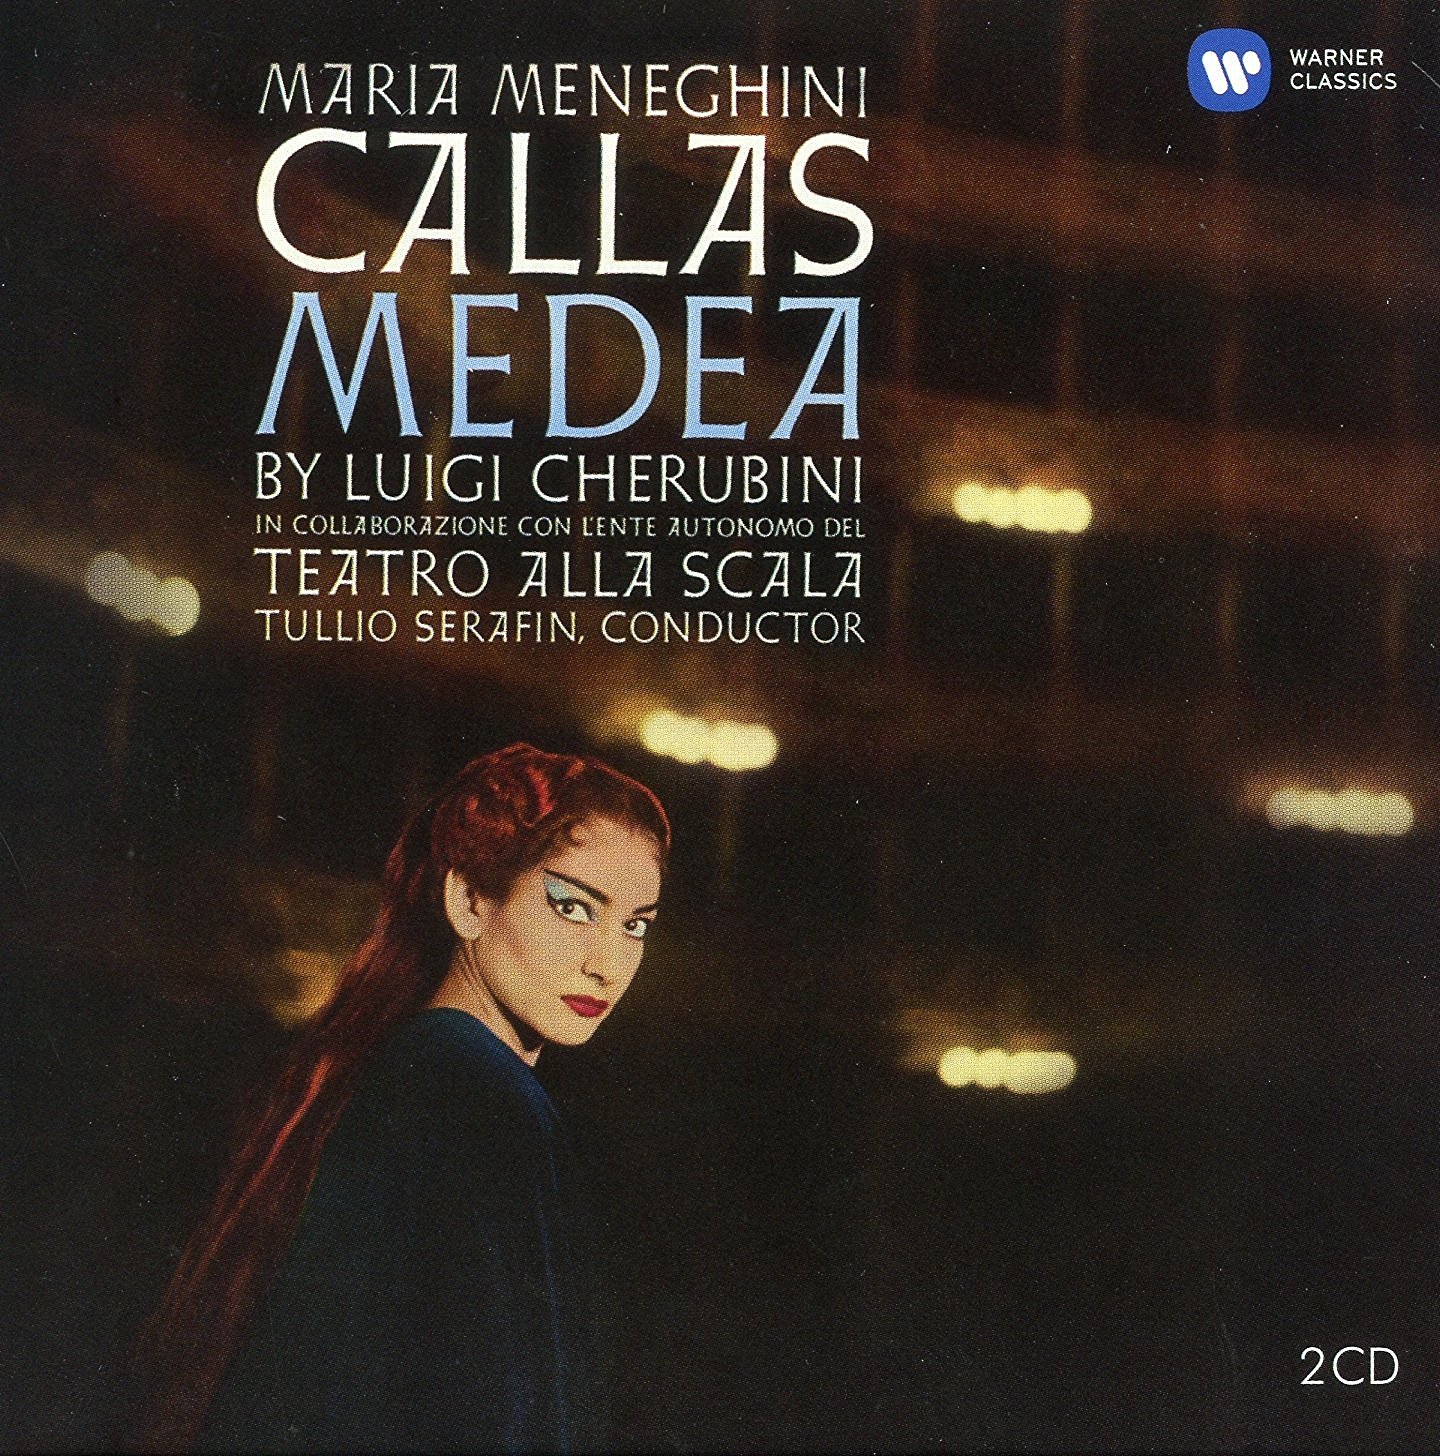 Cherubini - Medea Maria Callas Remastered | Renata Scotto, Maria Callas, Maria Meneghini